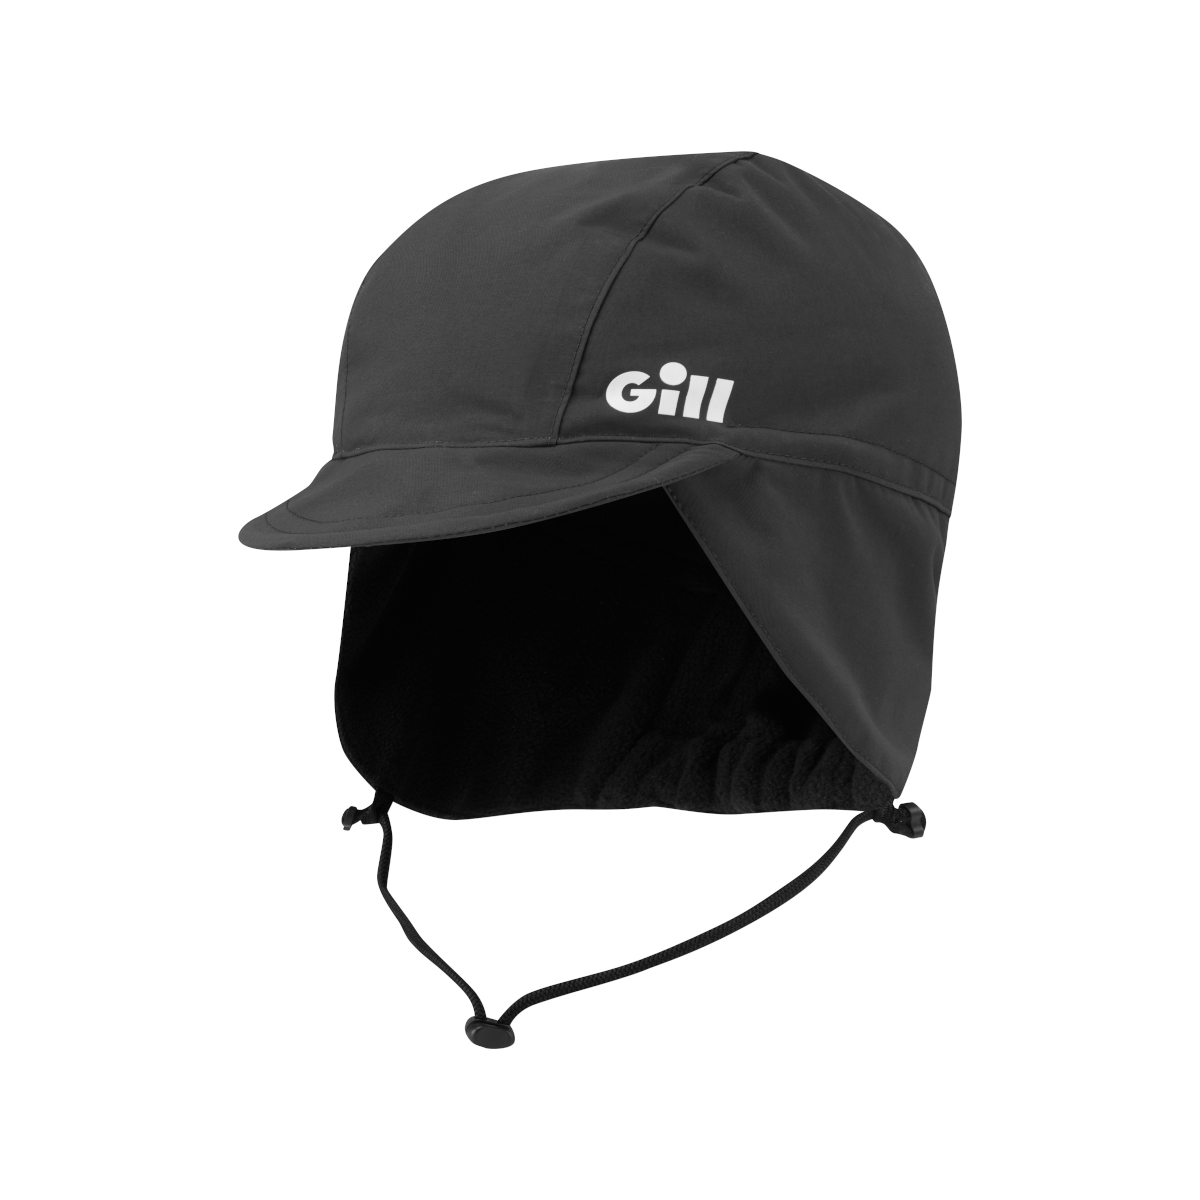 Gill Offshore casquette saharienne - graphite